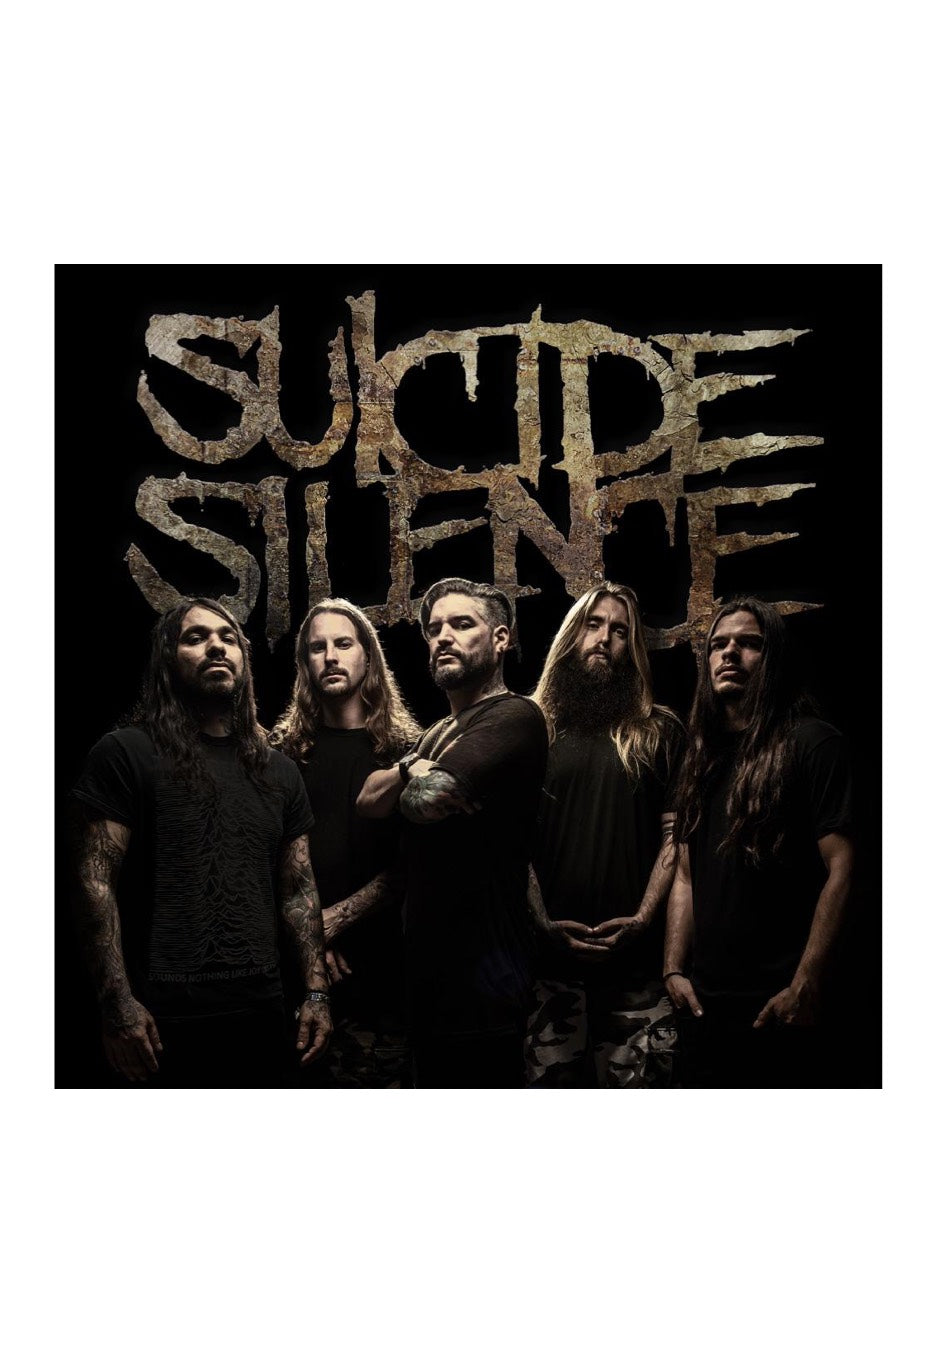 Suicide Silence - Suicide Silence - CD